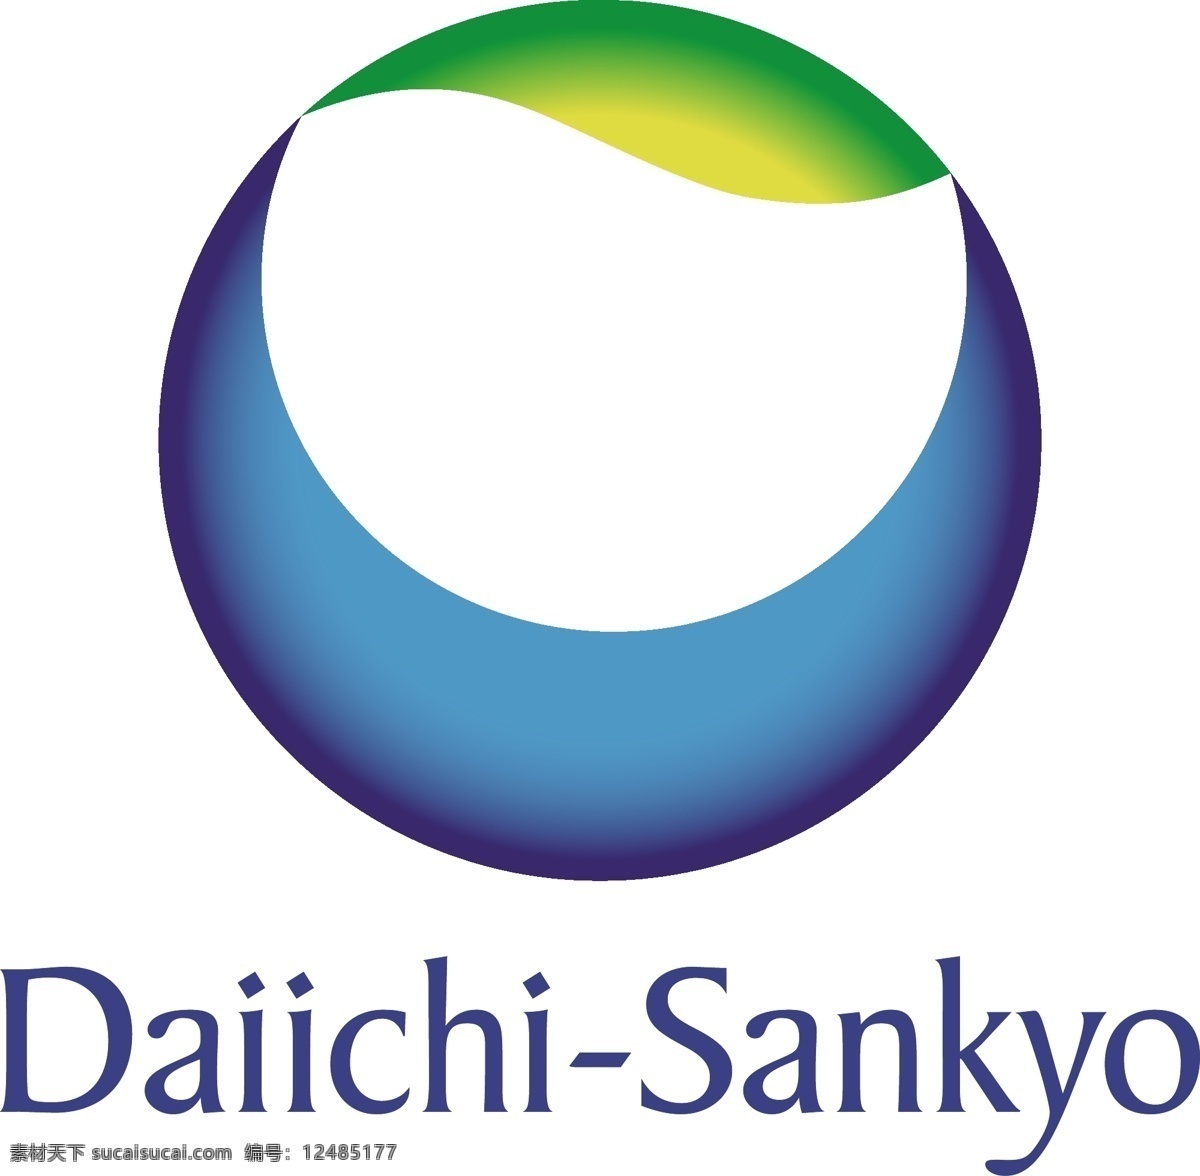 三 共 株式会社 第一三共 药品logo 圆形logo daiichi sankyo logo 元素 标志图标 企业 标志